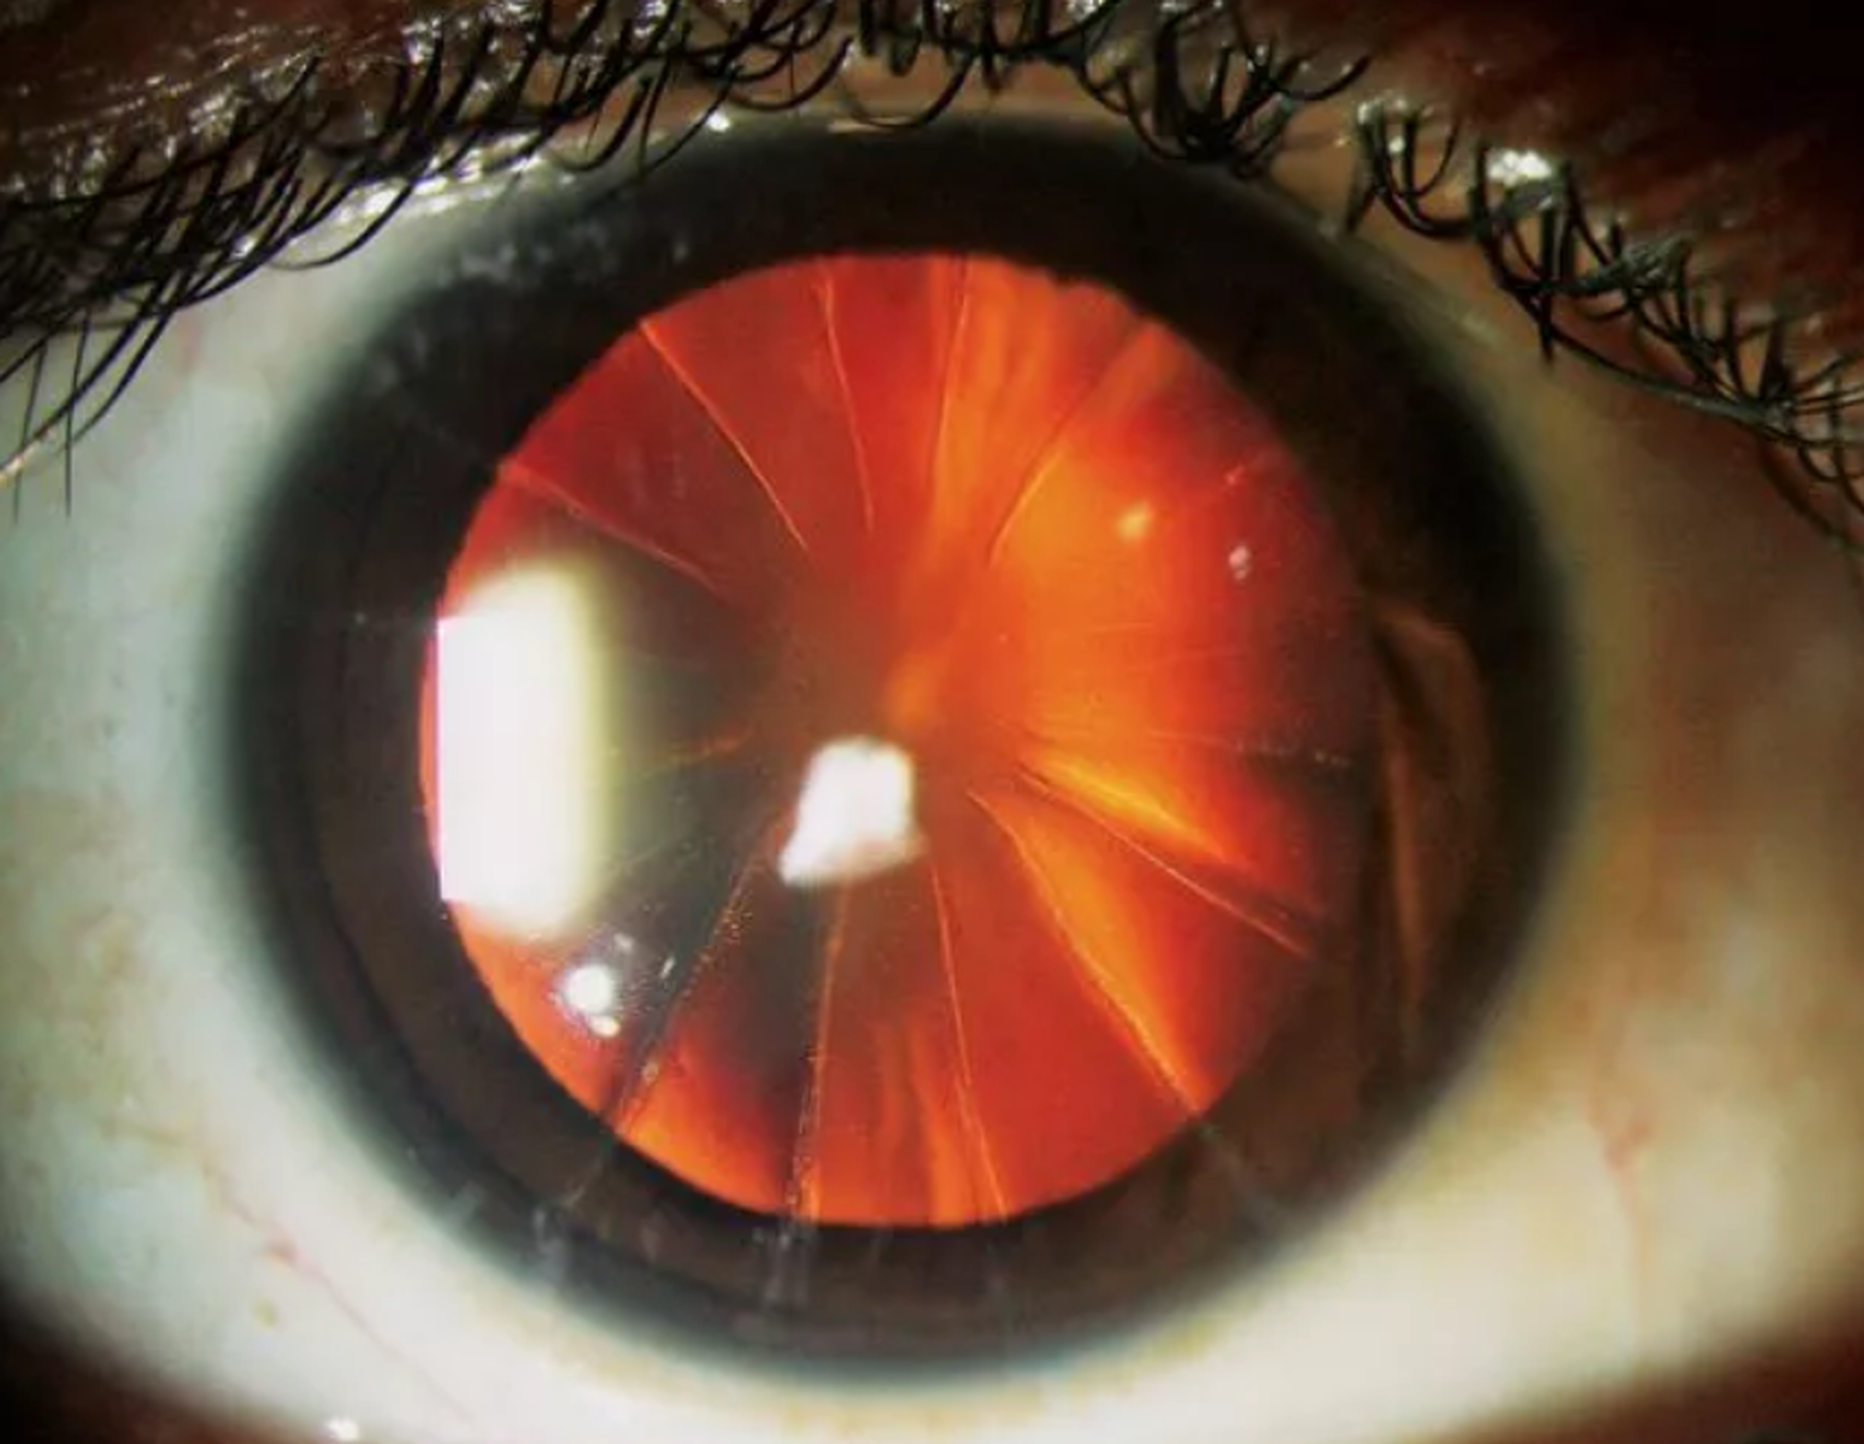 Kunagise populaarse silmaoperatsiooni tulemus